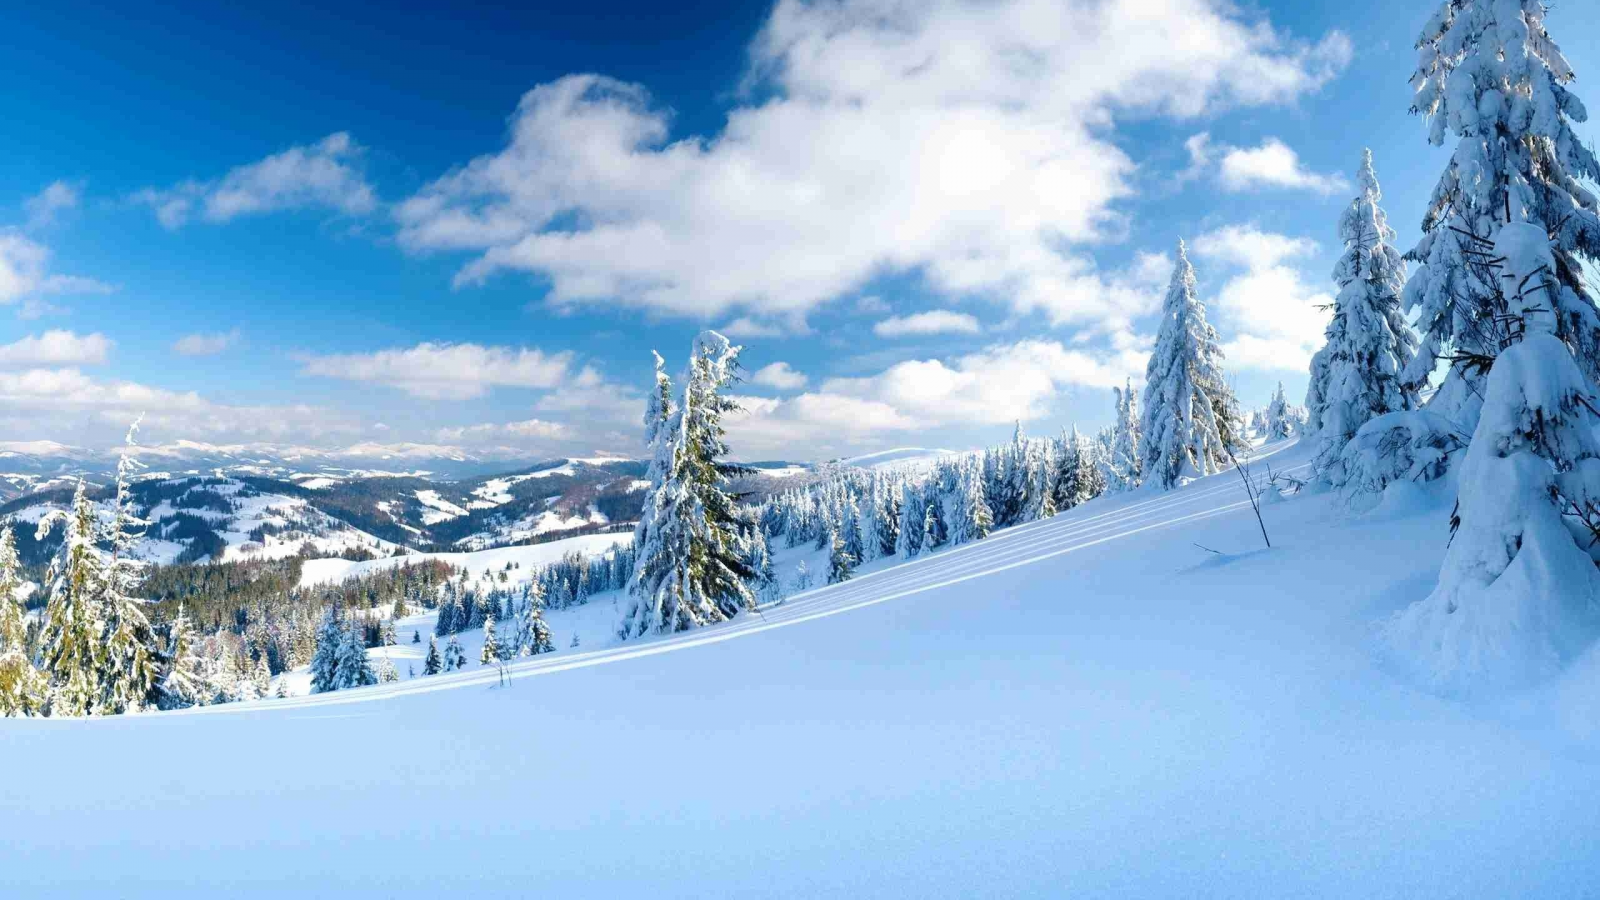 облака, пейзажи, природа, зимние обои, склоны, фото, зима, деревья, снег